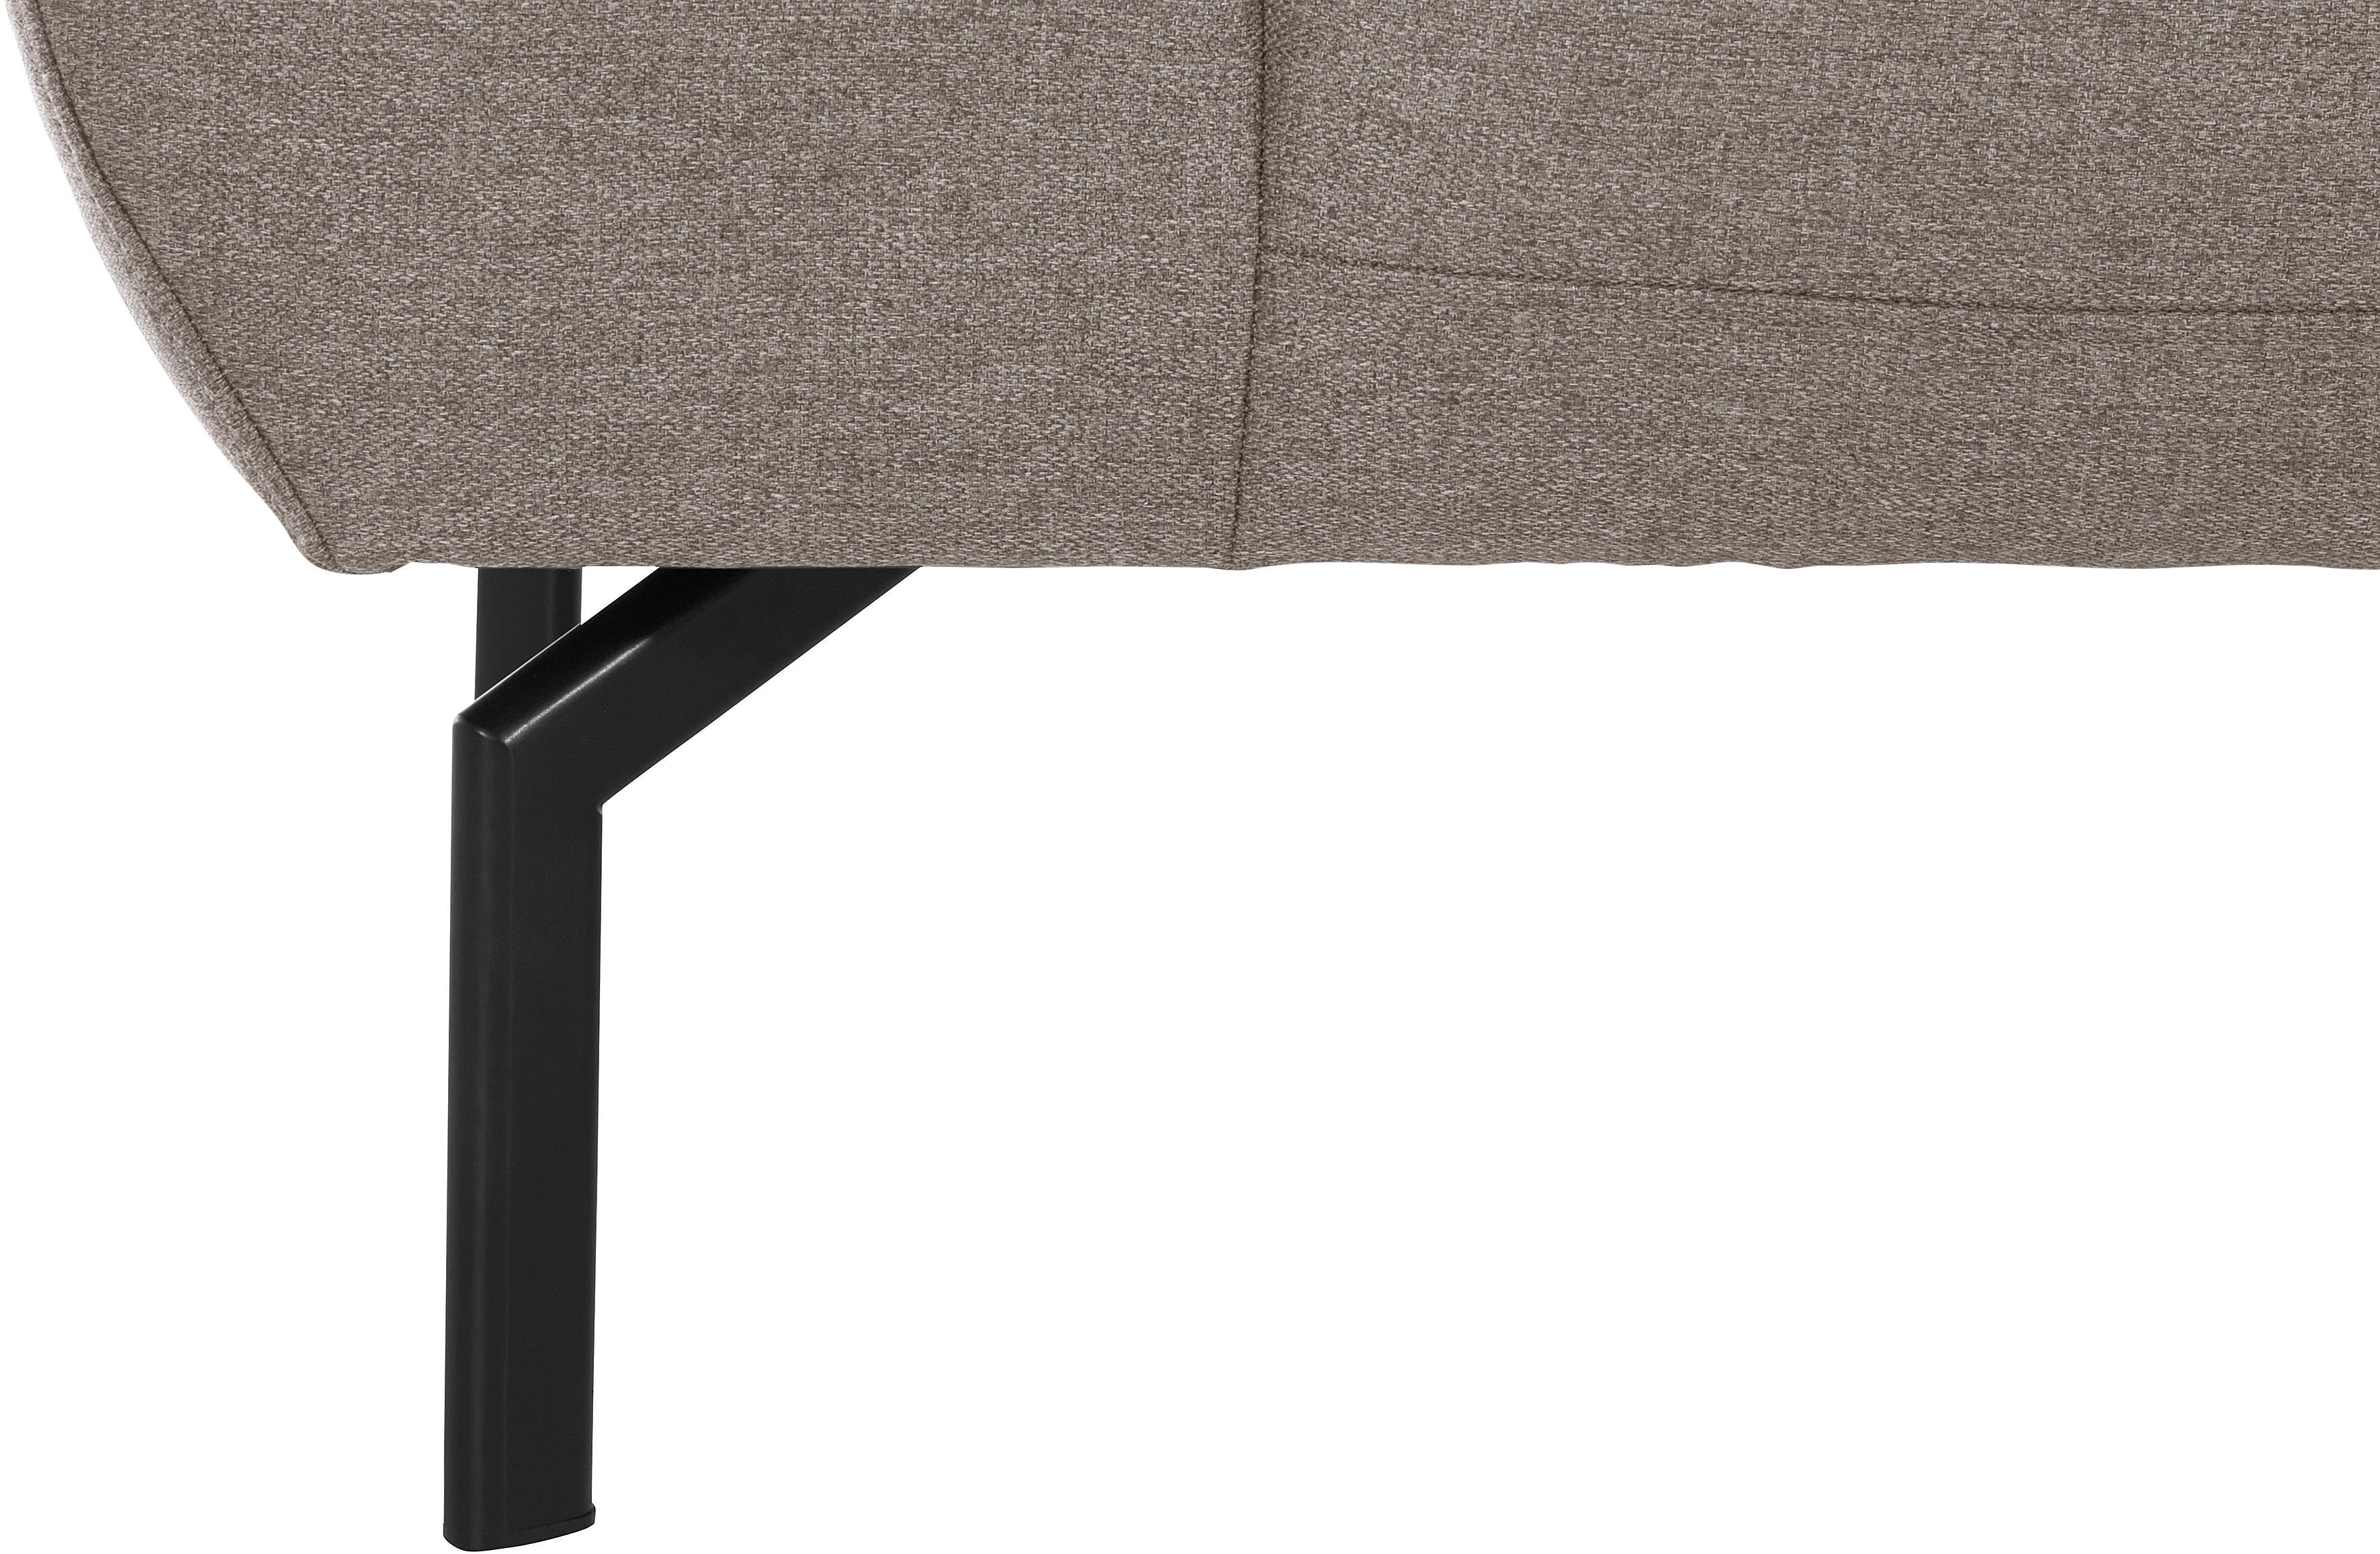 Luxus-Microfaser 2-Sitzer Rückenverstellung, Lederoptik Luxus, Style Trapino wahlweise Places of in mit